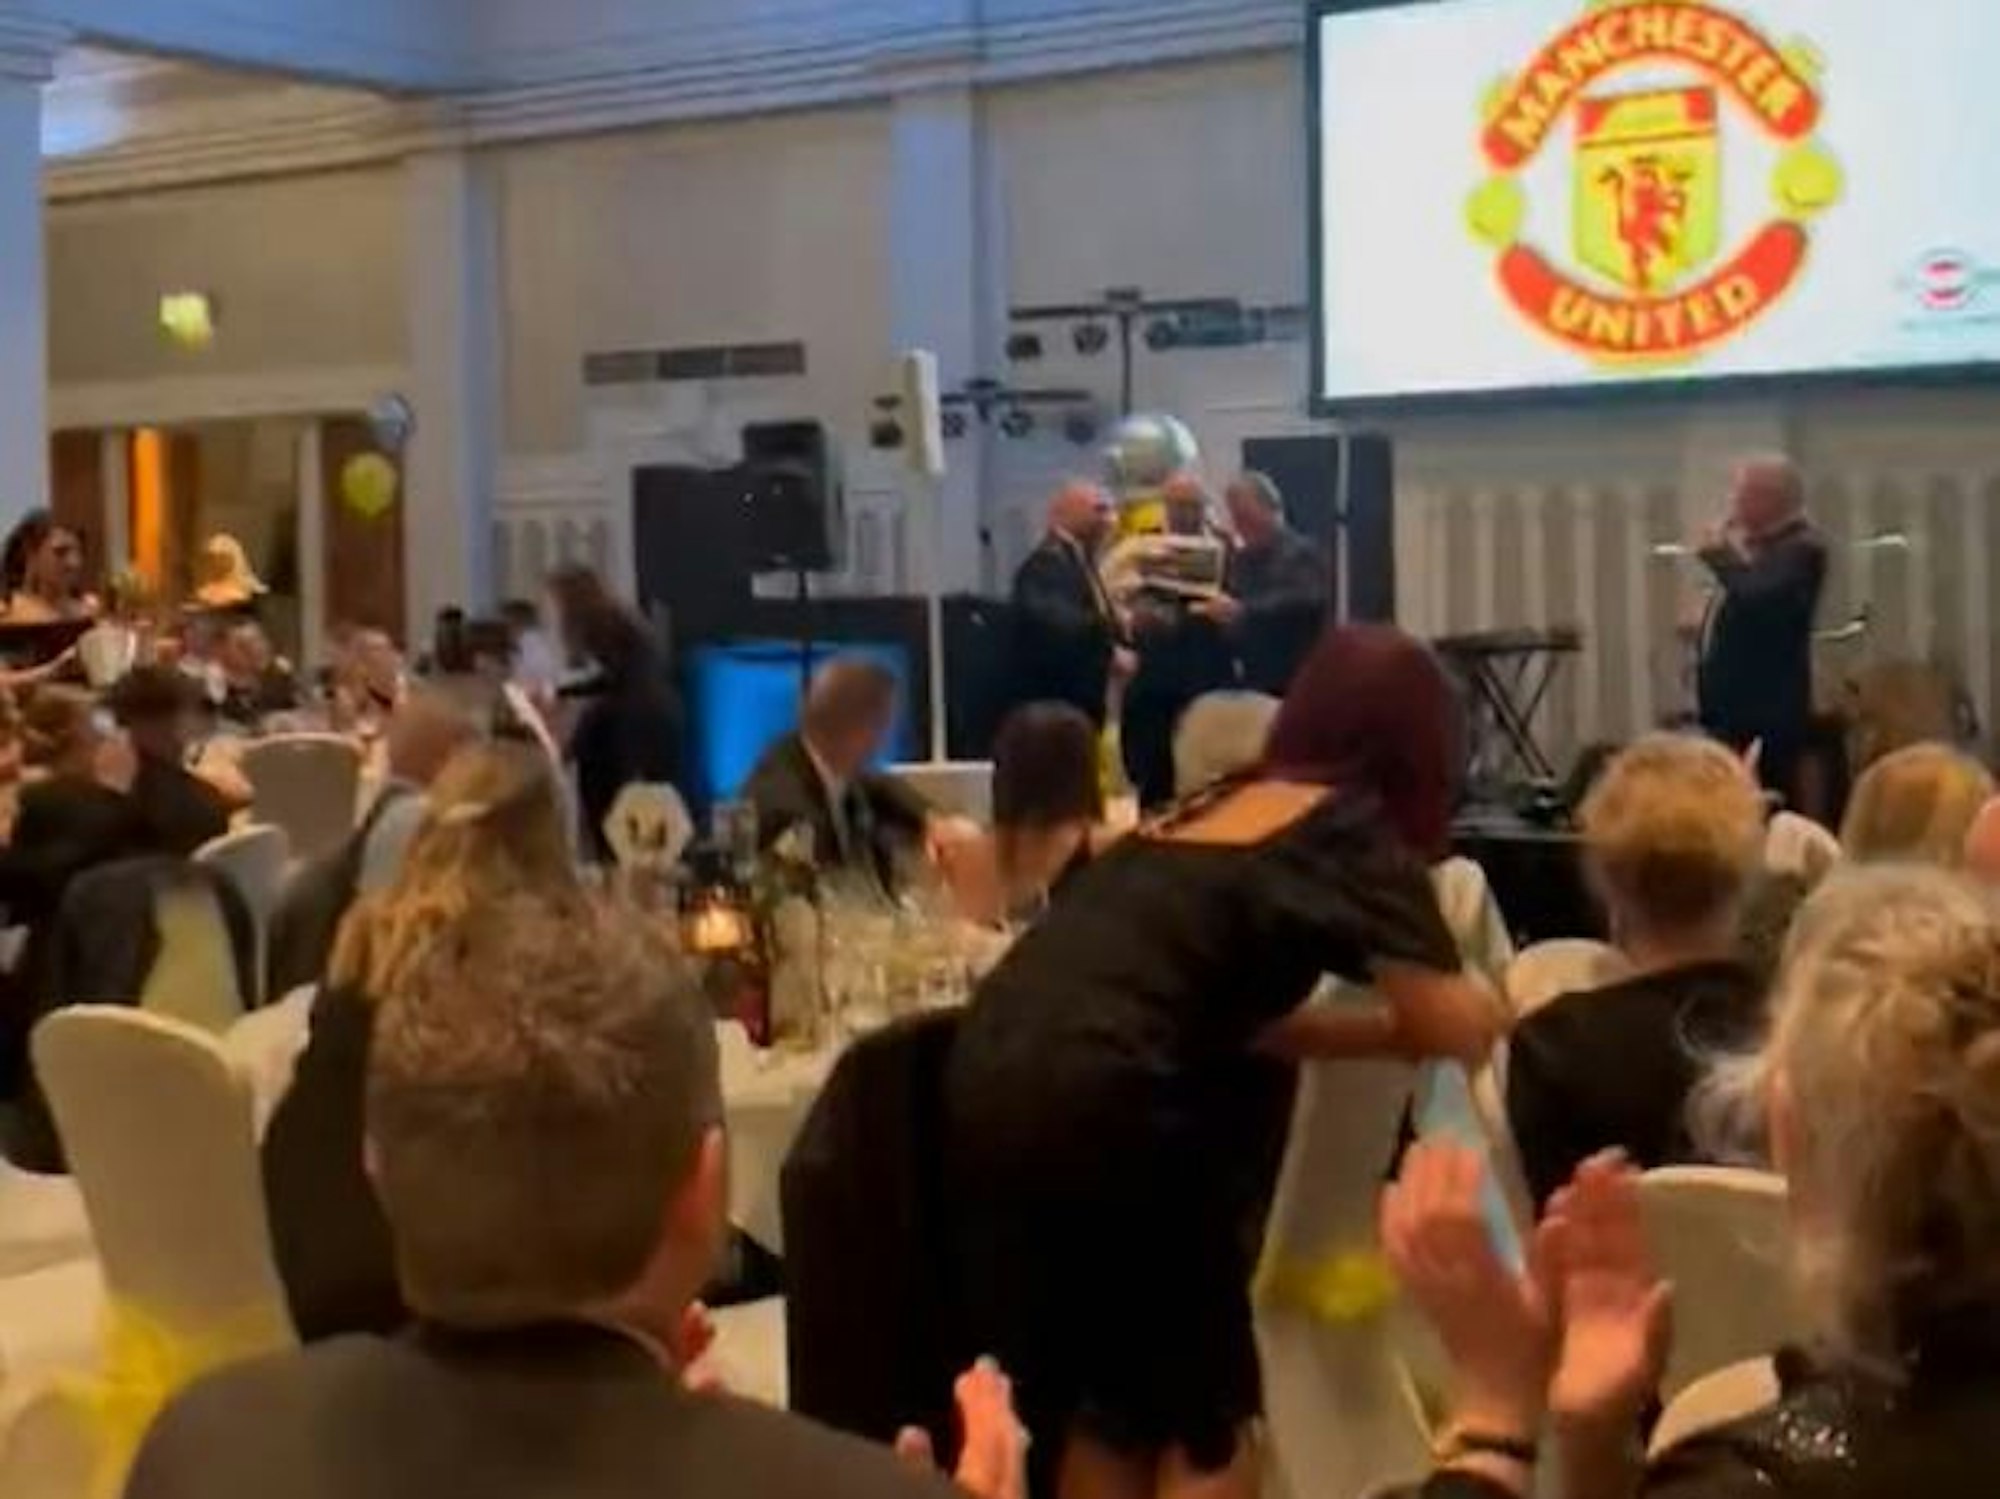 Ein Fan von Leeds United zündet bei einer Auktion Tickets von Manchester United an.